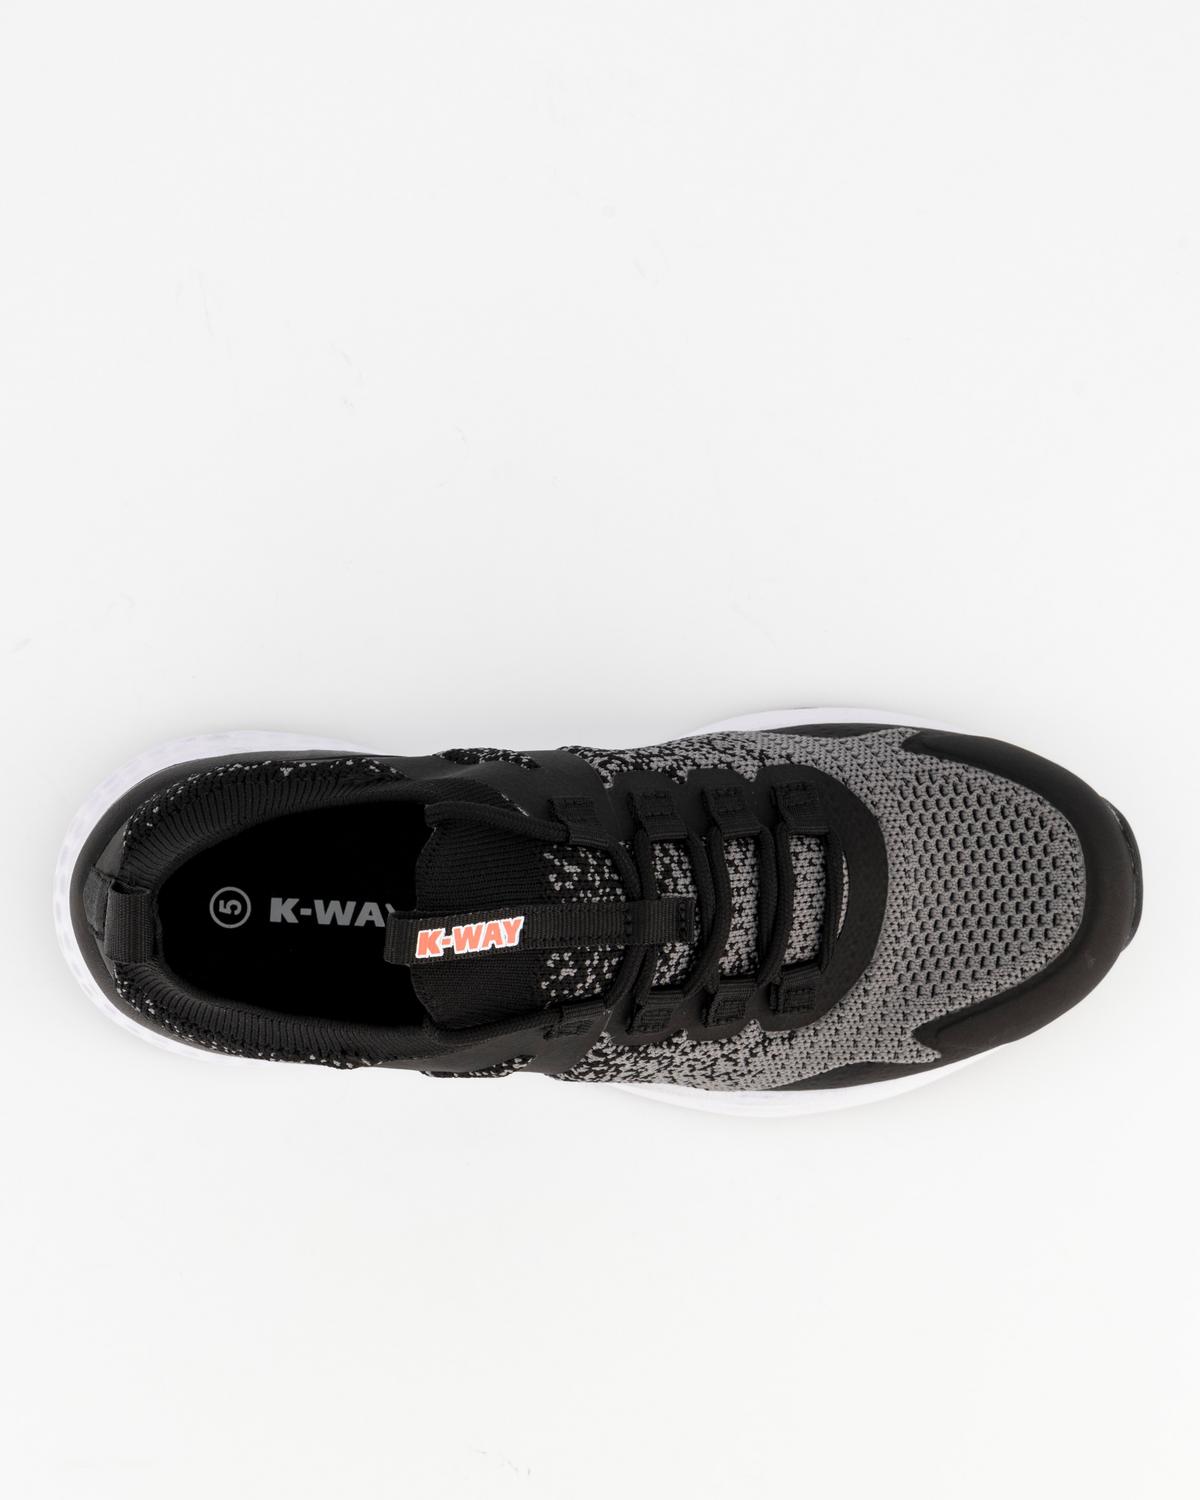 K-Way Women’s Renegade Running Shoes -  Black